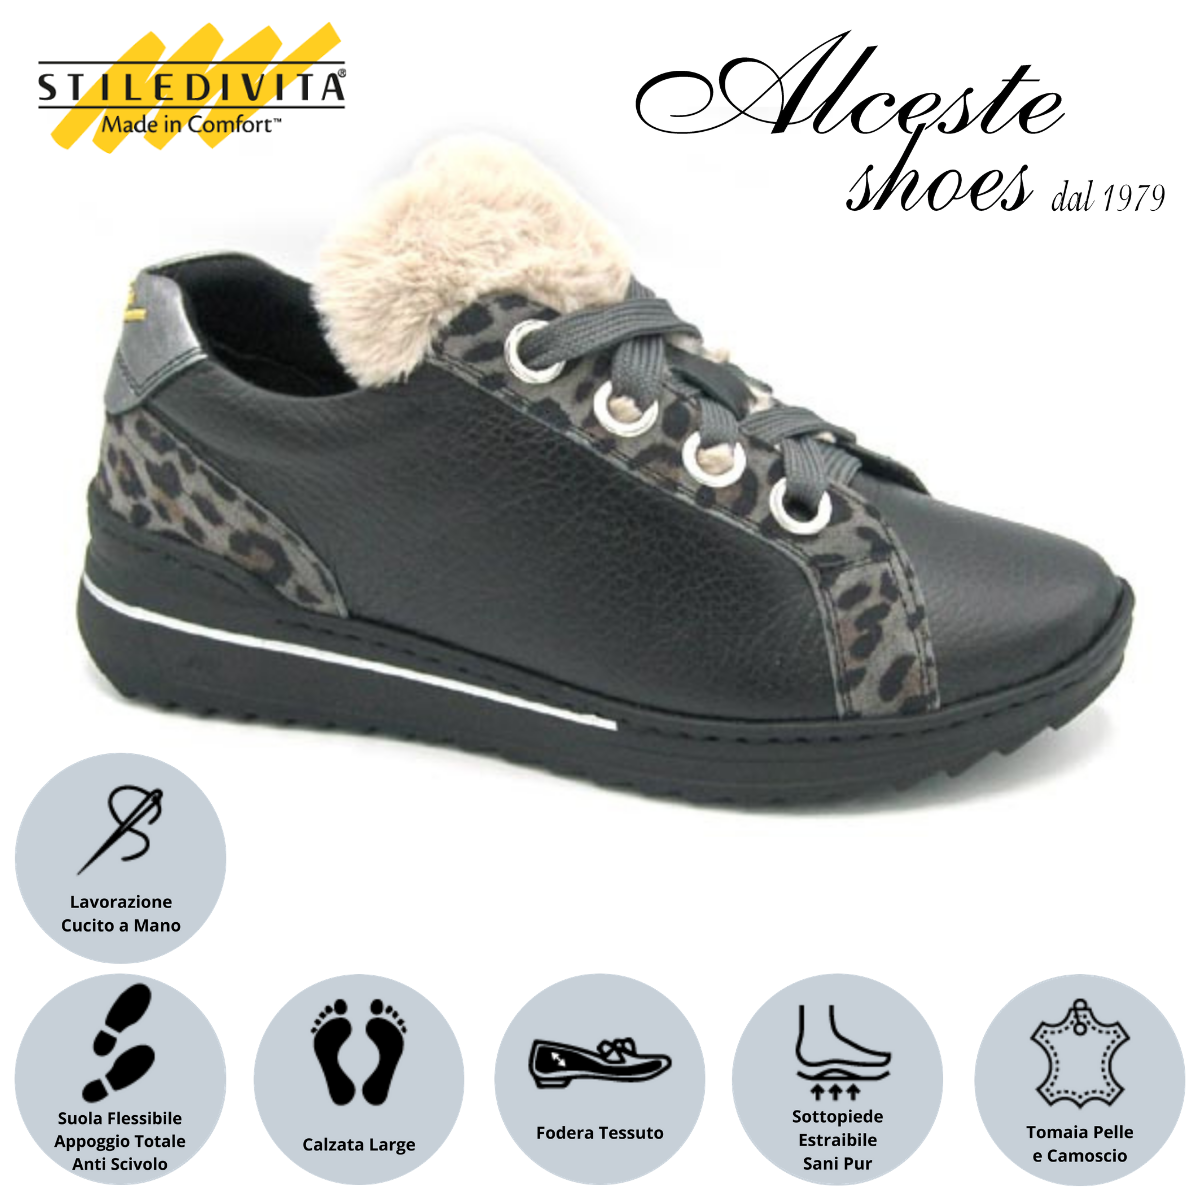 Sneakers Lacci Stiledivita Art. 7416 Pelle Nero e Camoscio Leopardo Grigio Alceste Shoes 7